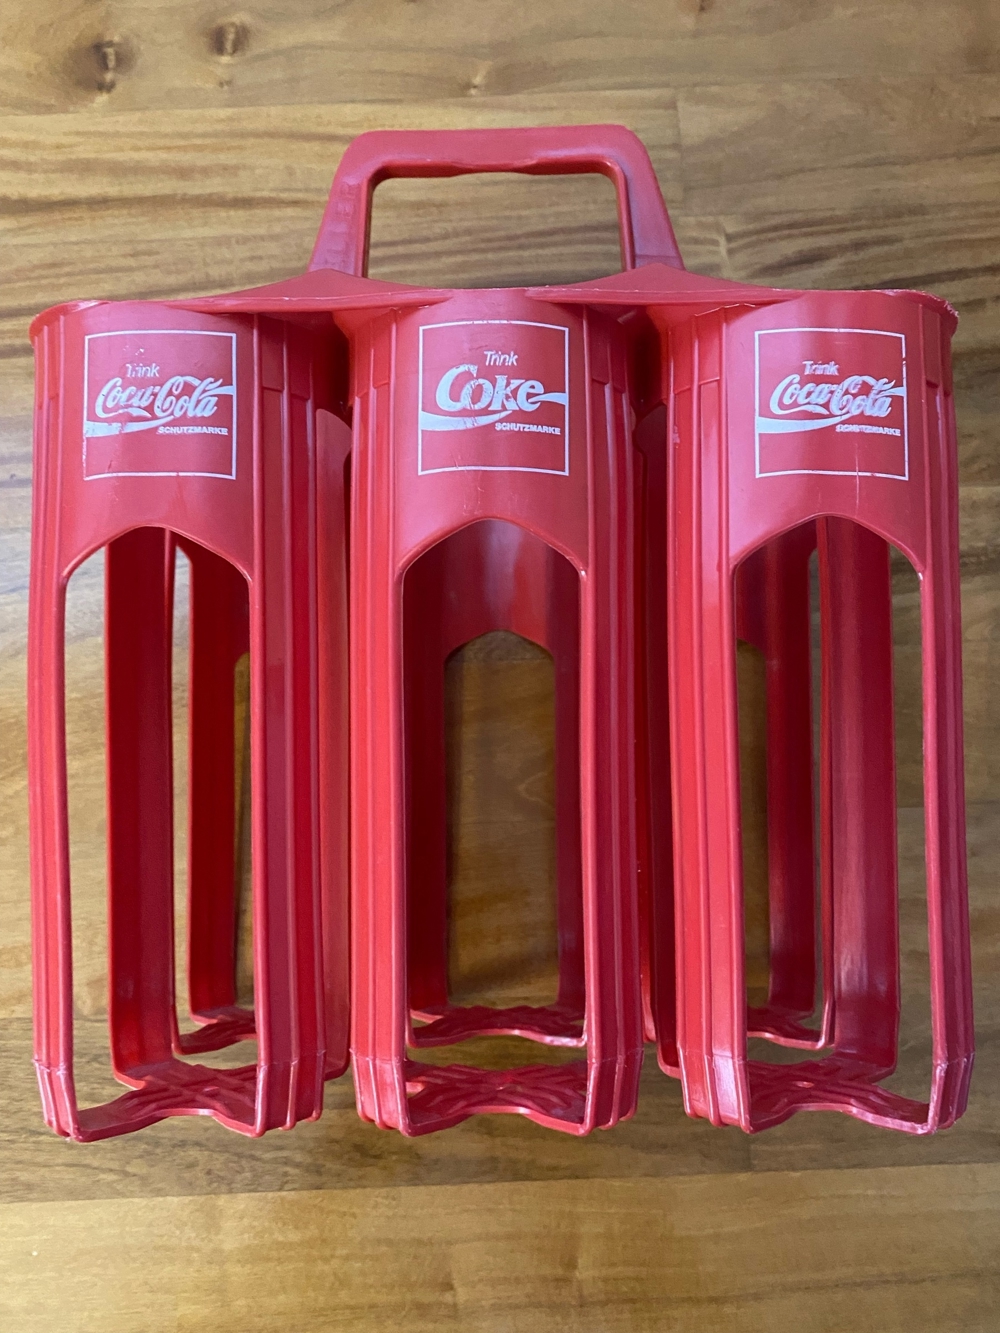 Coca-Cola Flaschenträger aus den 80ern